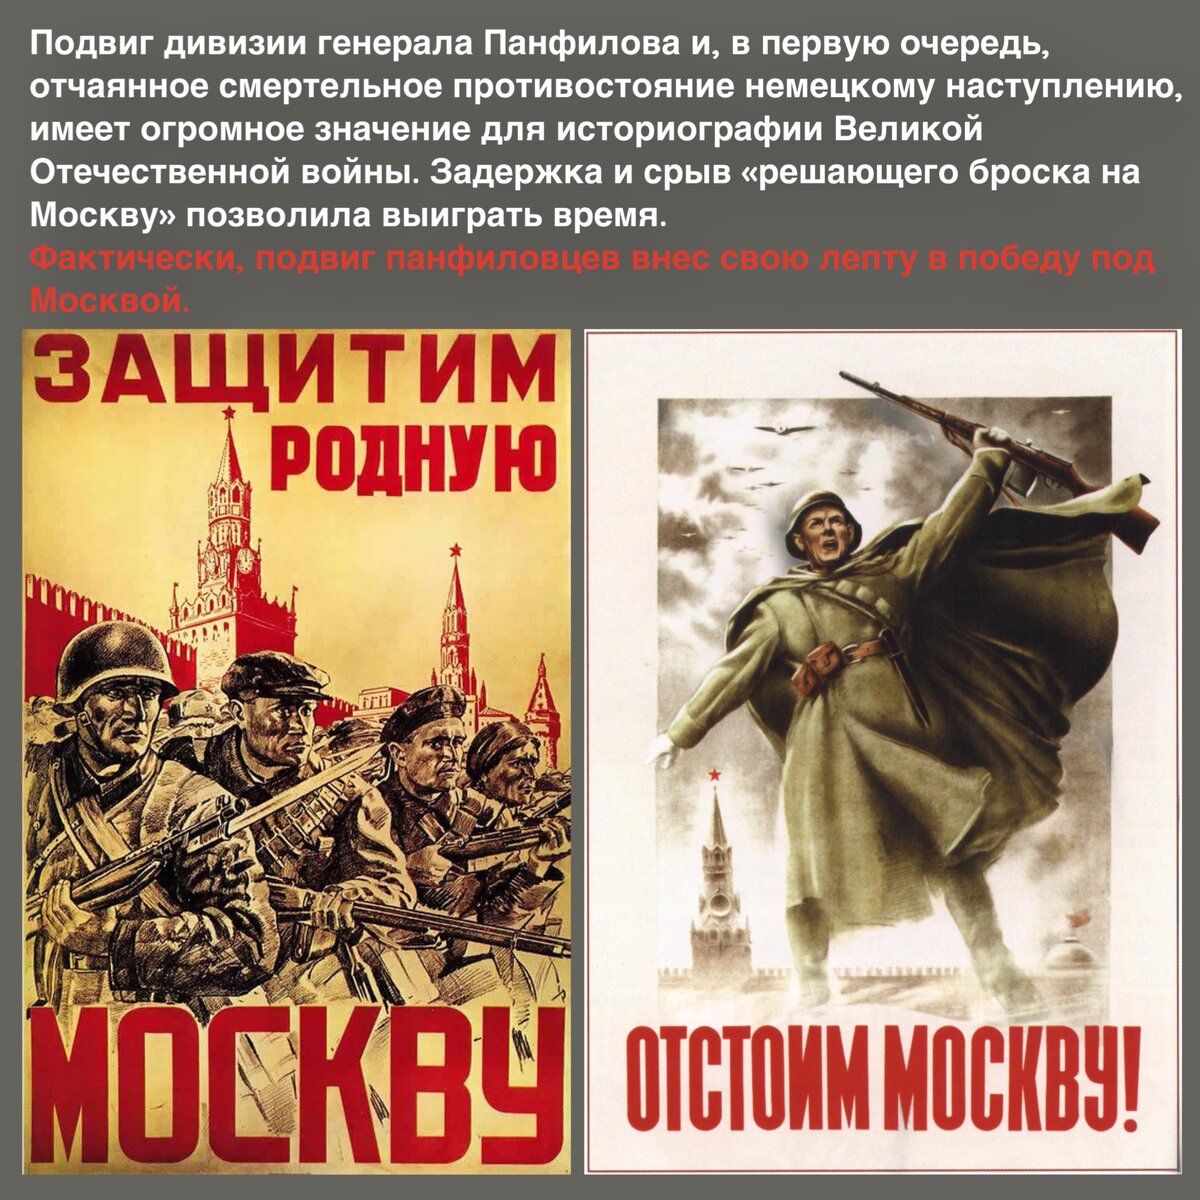 Великому подвигу слава. Таким образом героизм это. Патриотизм и героизм образ защитника в русской литературе плакат.